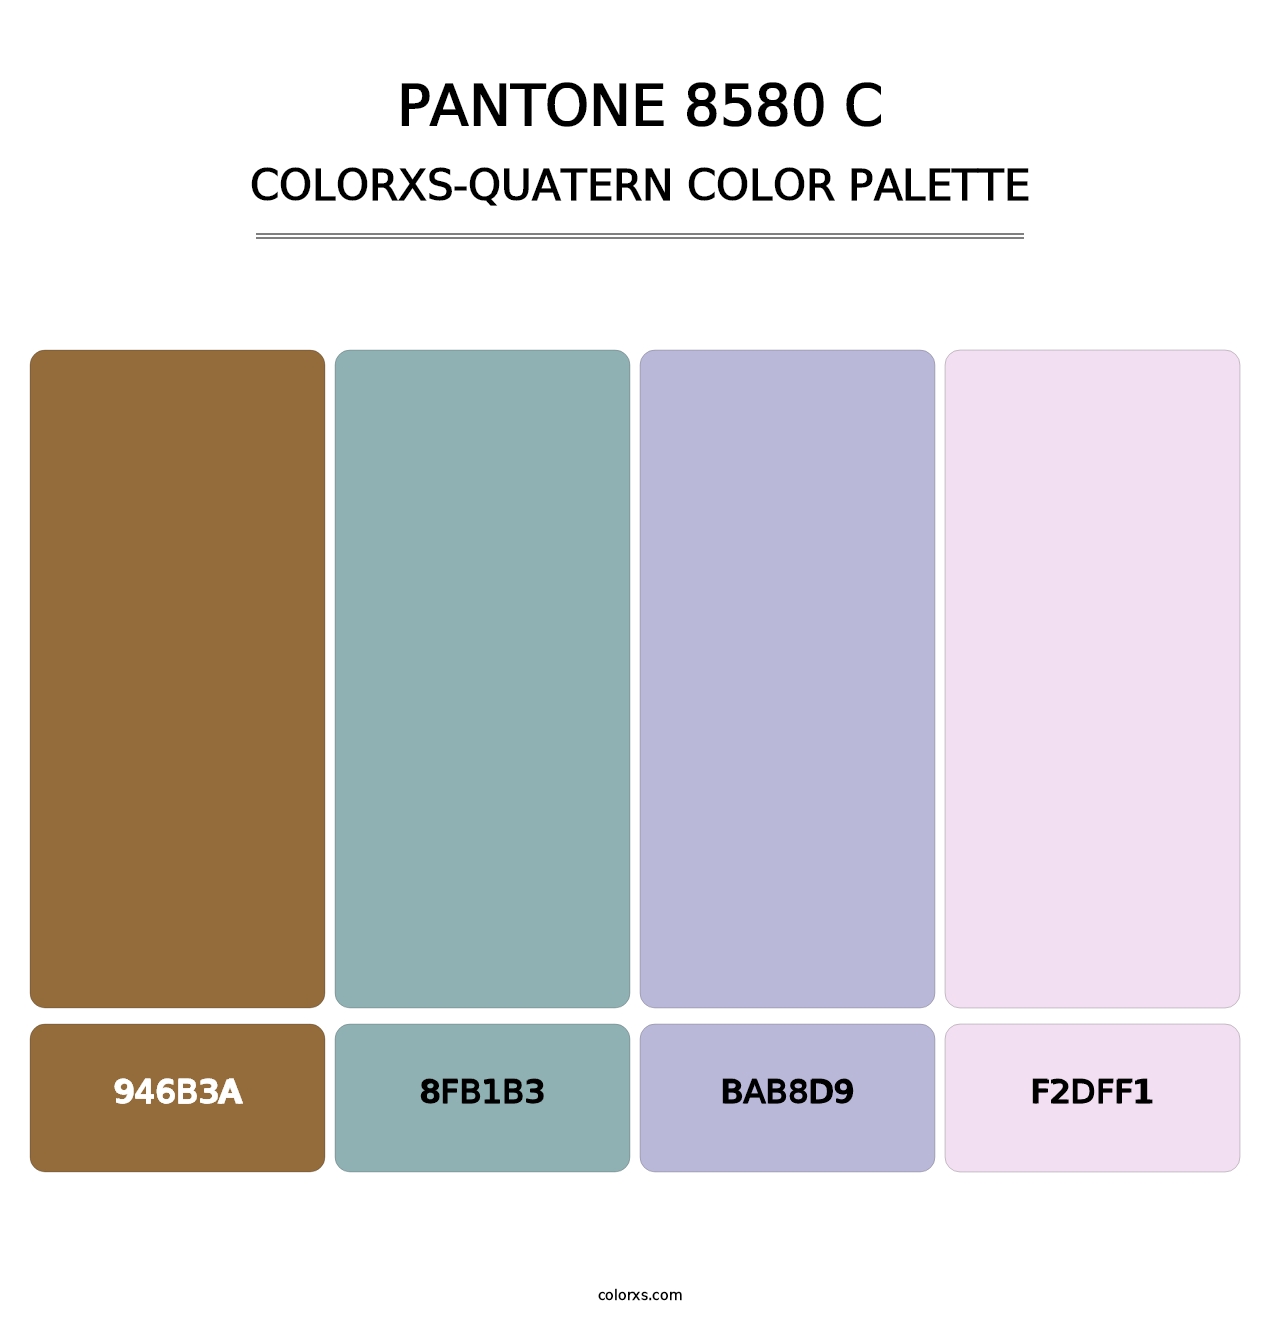 PANTONE 8580 C - Colorxs Quatern Palette